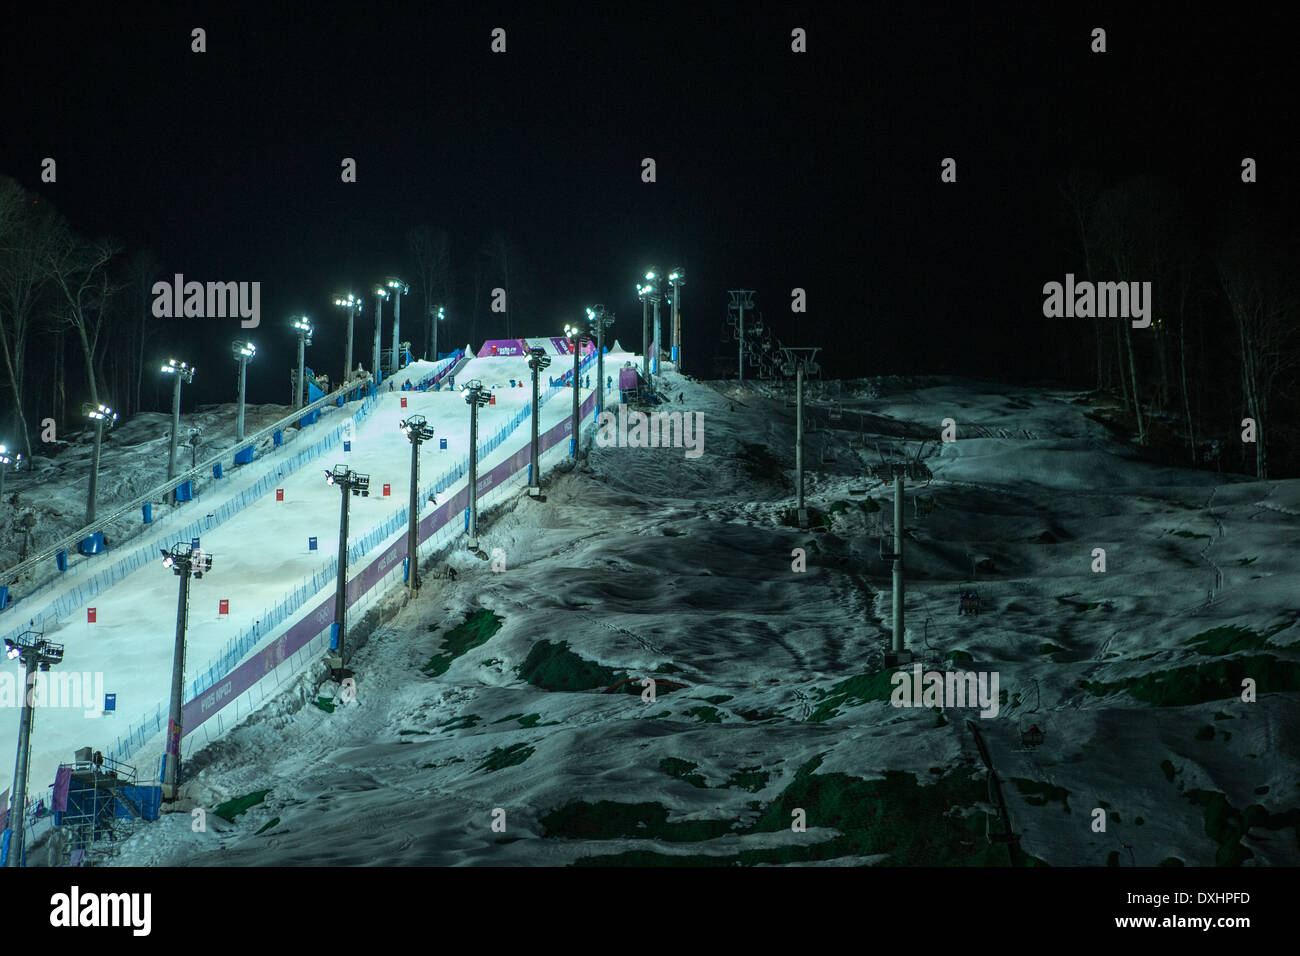 Veranstaltungsort für Freestyle-Ski Buckelpisten-Wettbewerb bei den Olympischen Winterspiele Sotschi 2014 Stockfoto